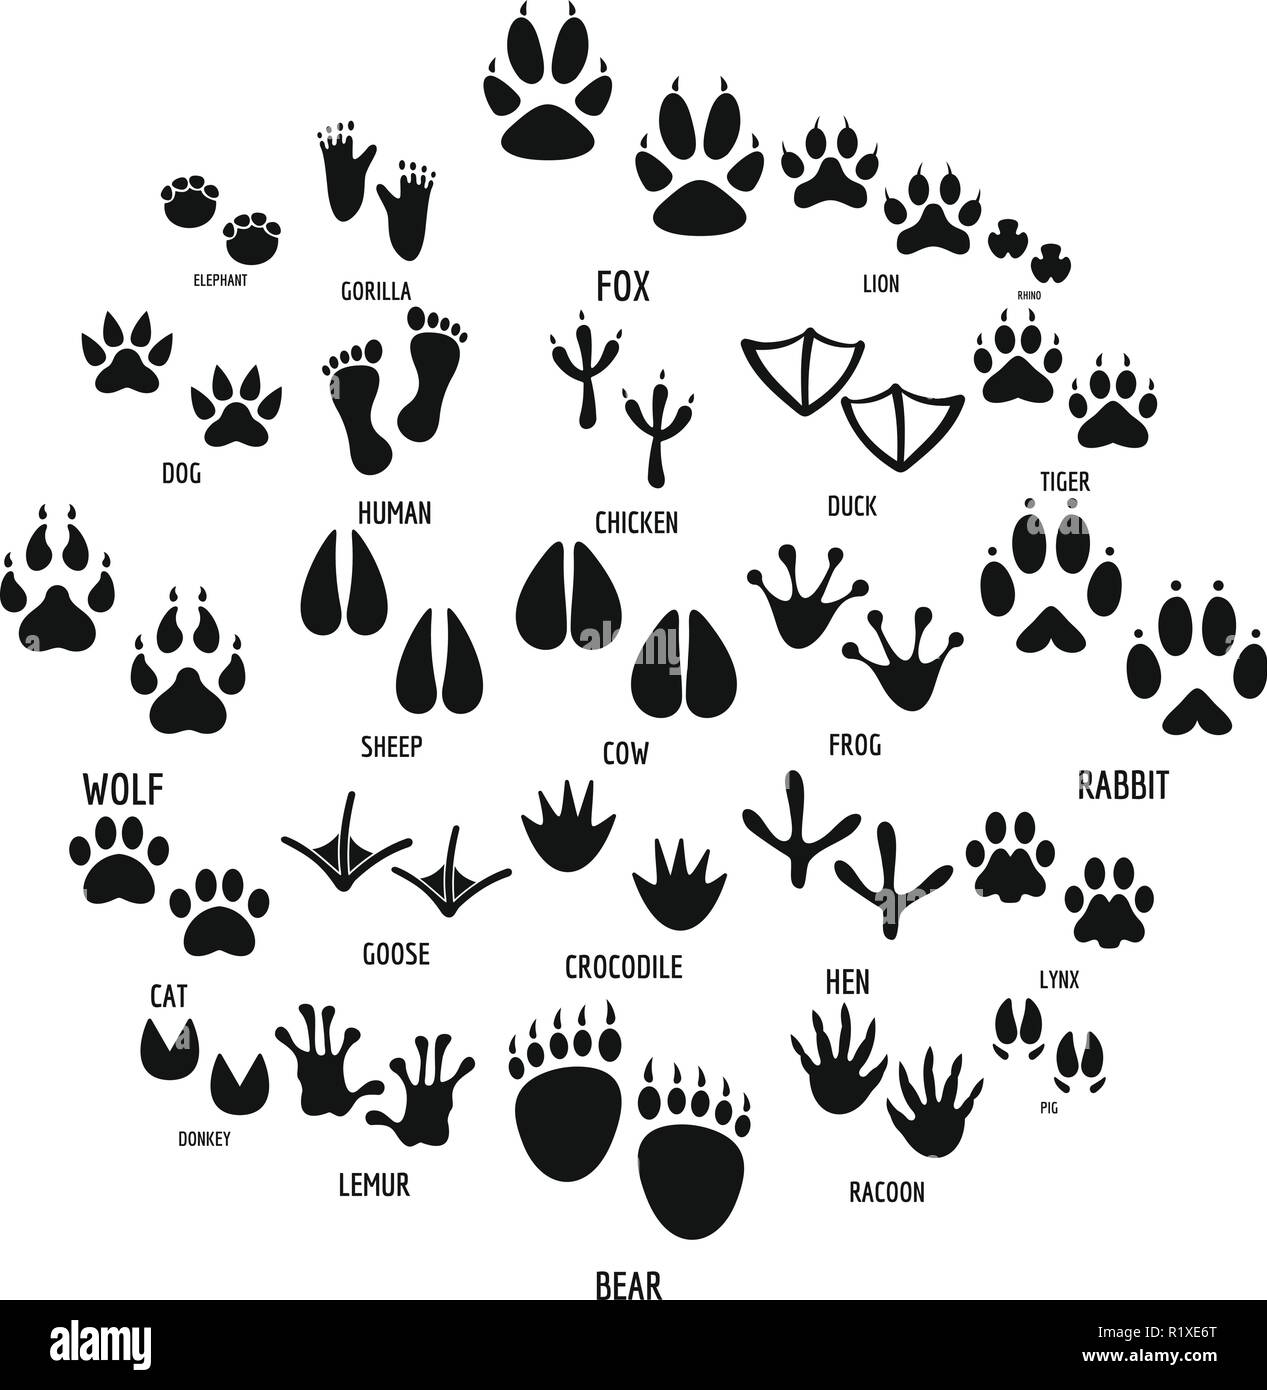 L'empreinte d'animaux icons set. Illustration simple de 25 empreinte animale vector icons for web Illustration de Vecteur